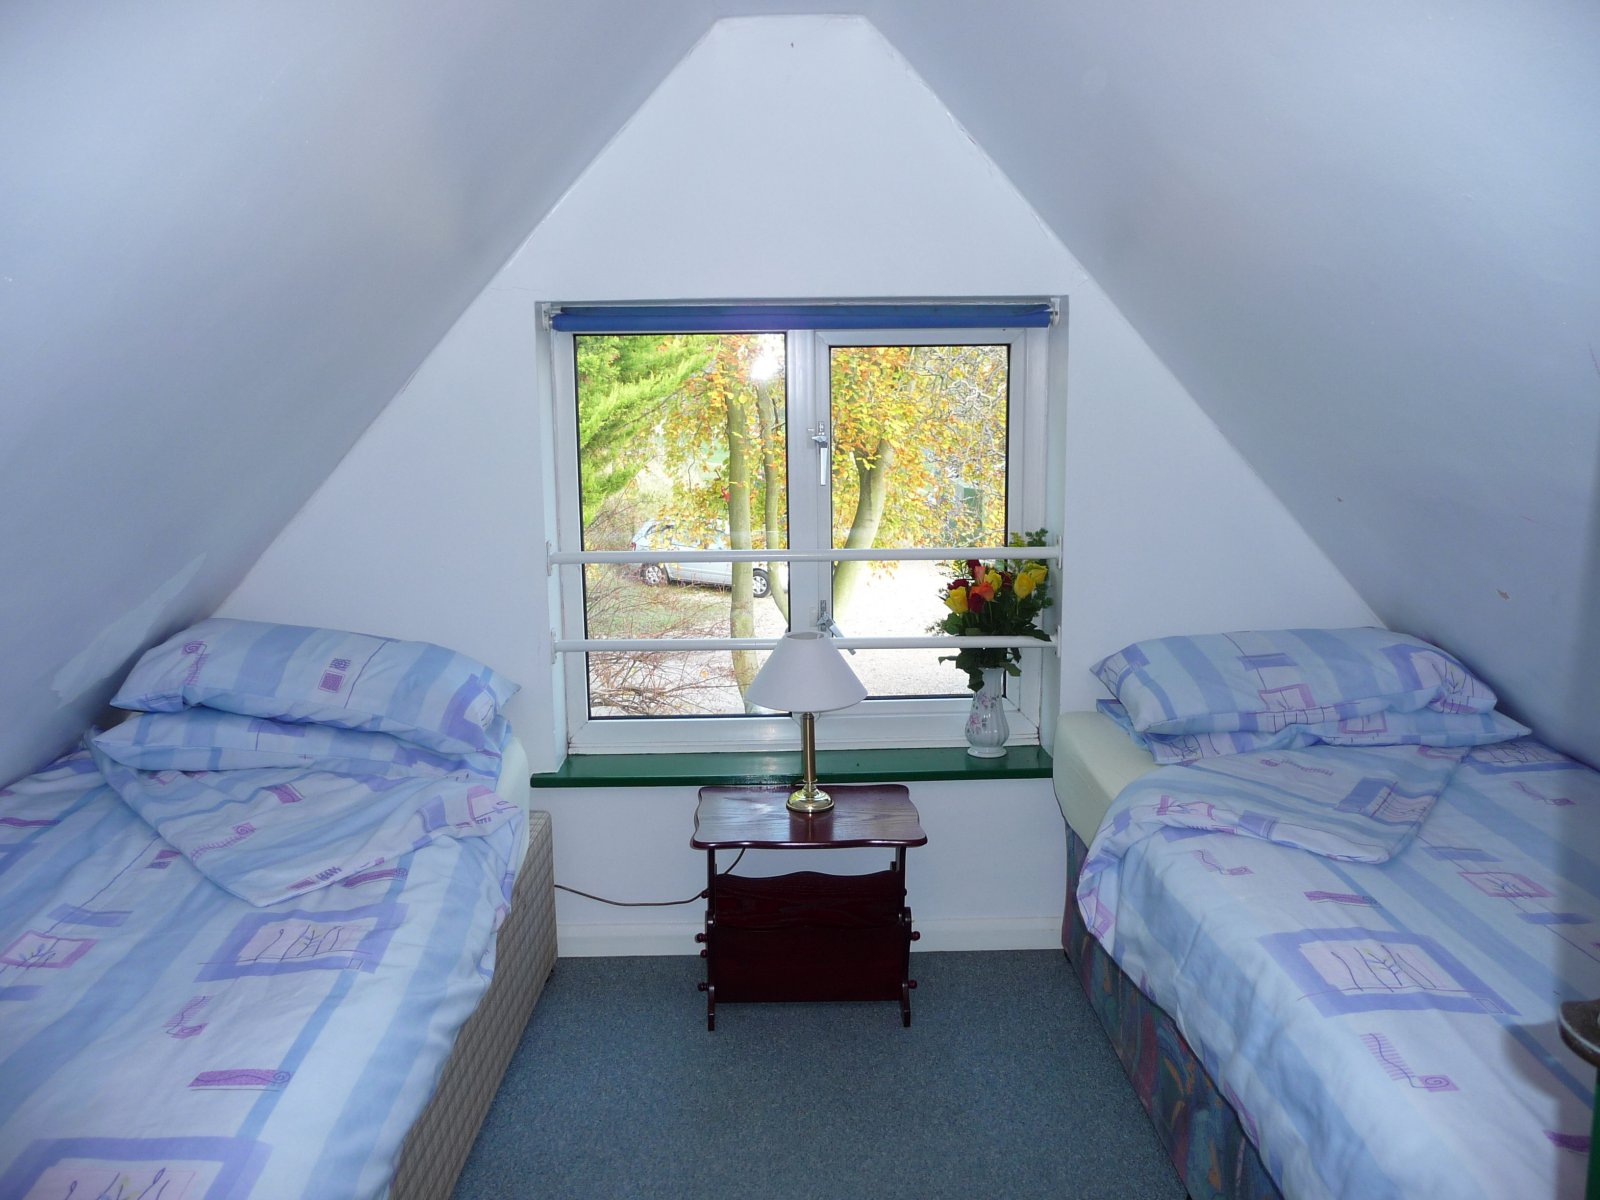  twin bedroom in loft